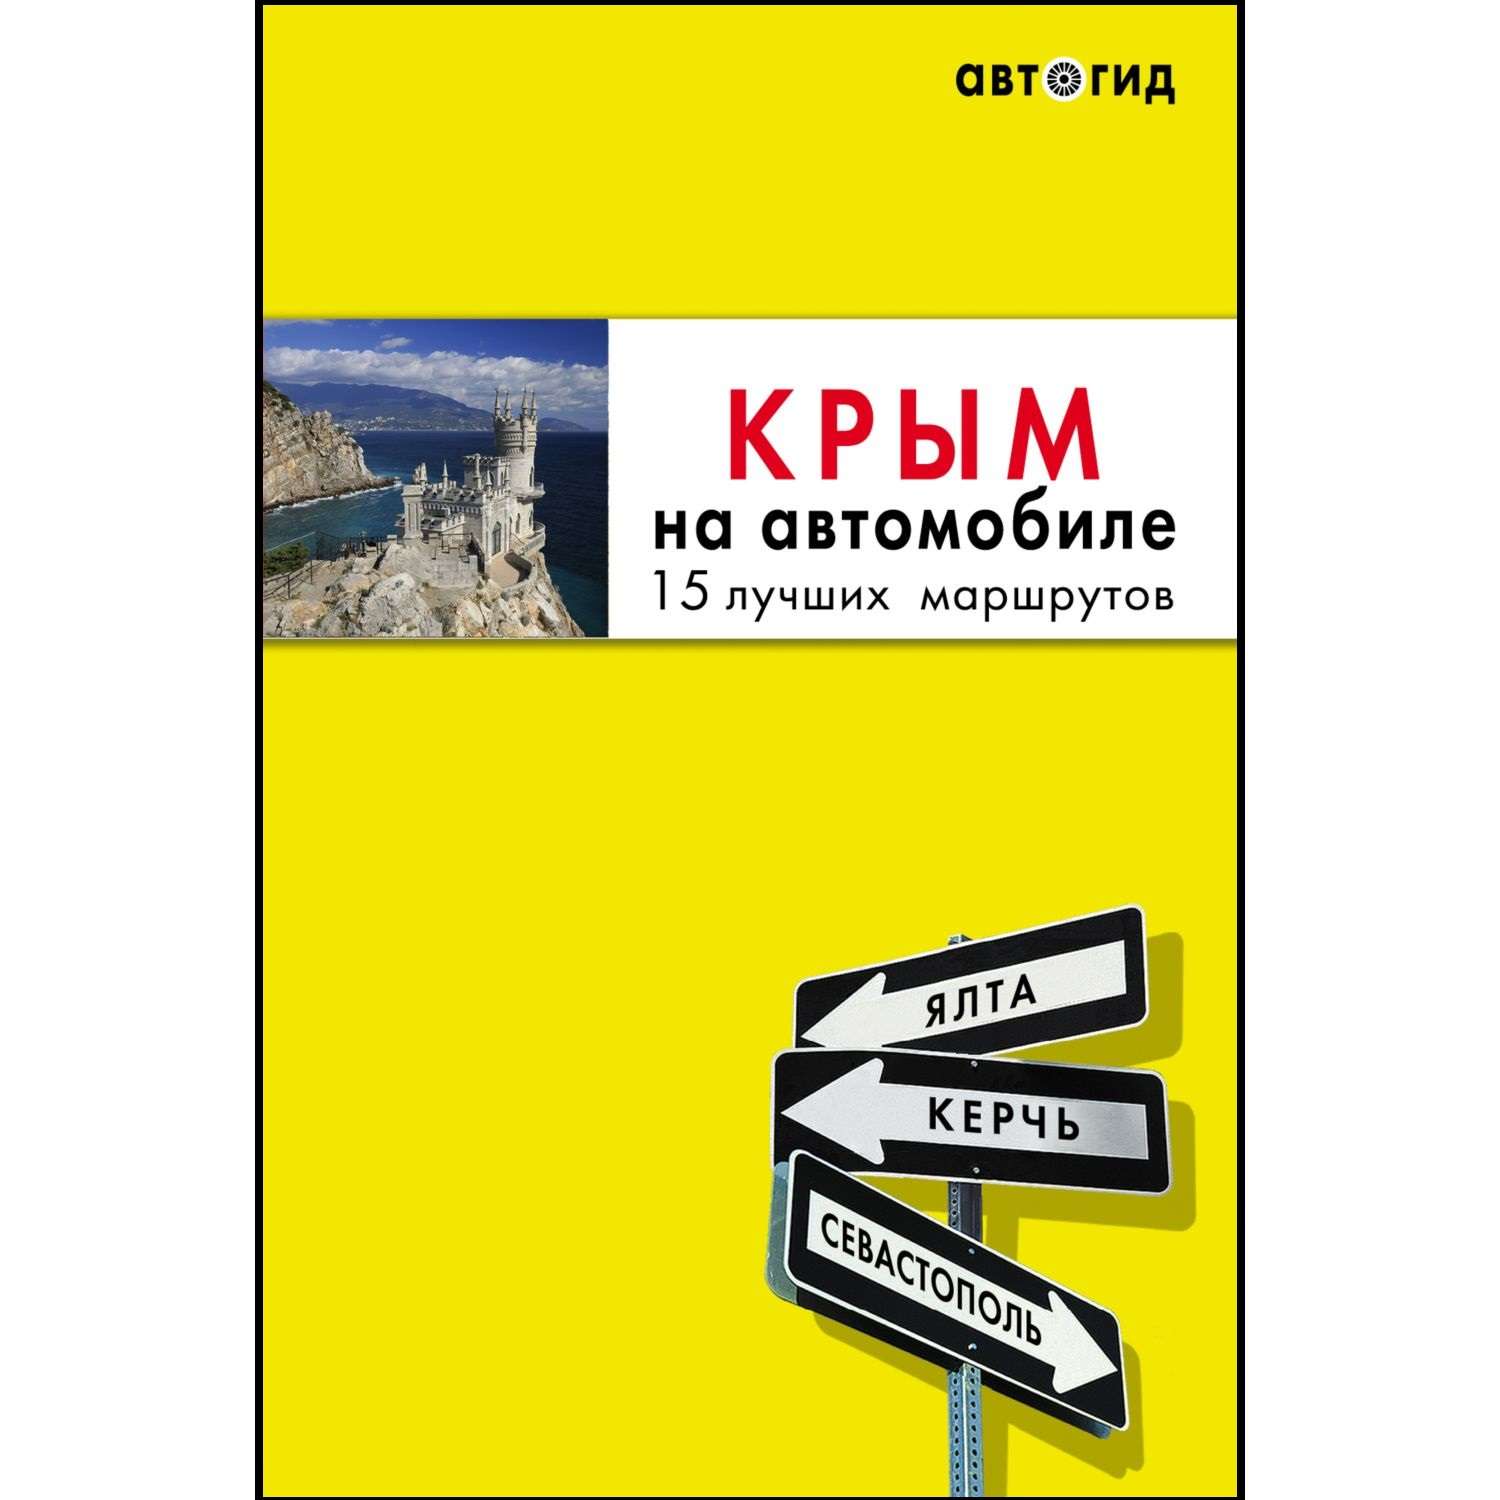 Книга БОМБОРА Крым на автомобиле 15 лучших маршрутов 3-е издание - фото 1